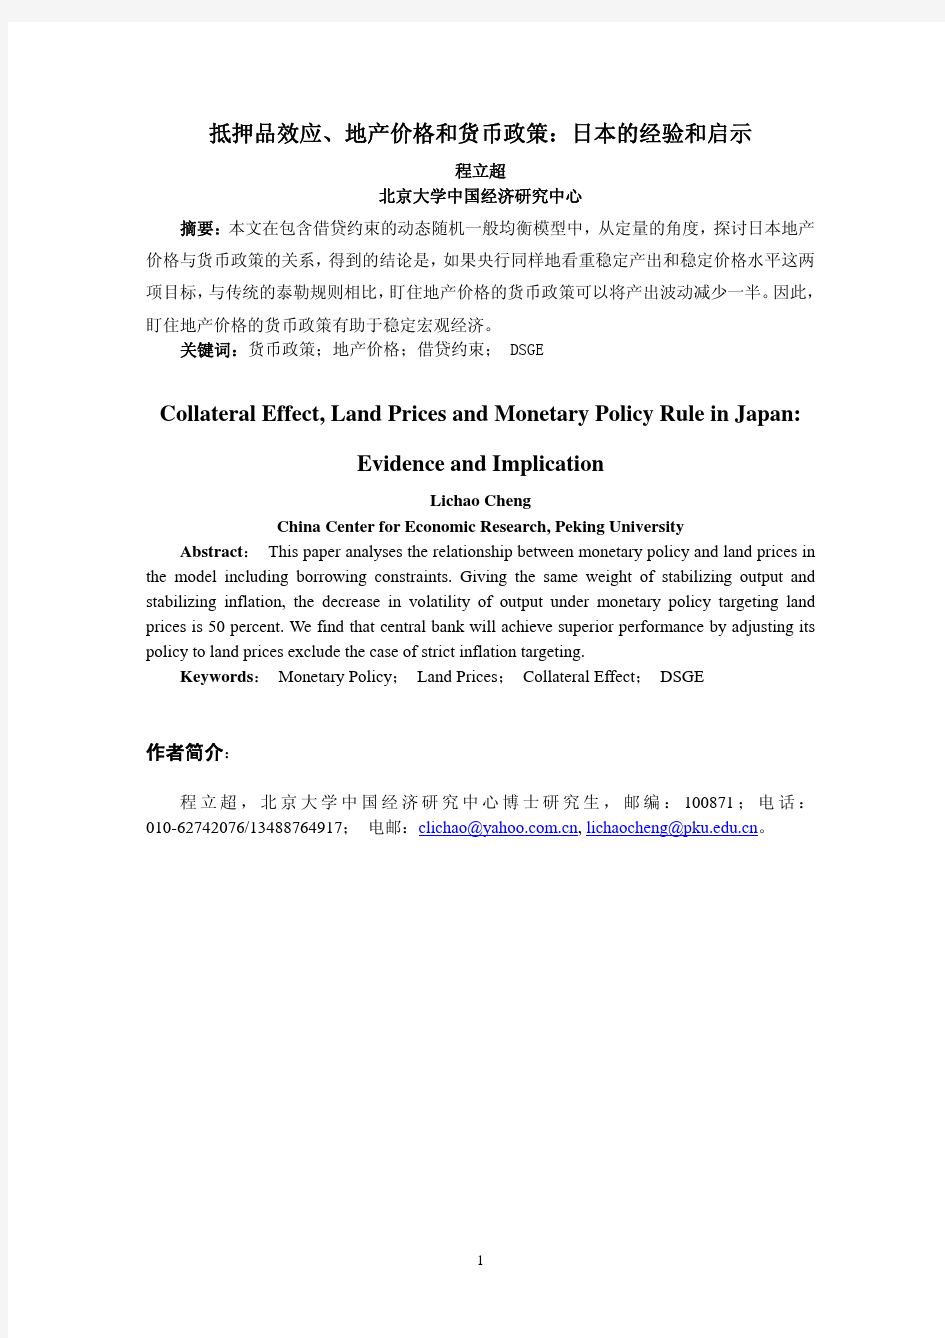 抵押品效应,地产价格和货币政策日本的经验和启示